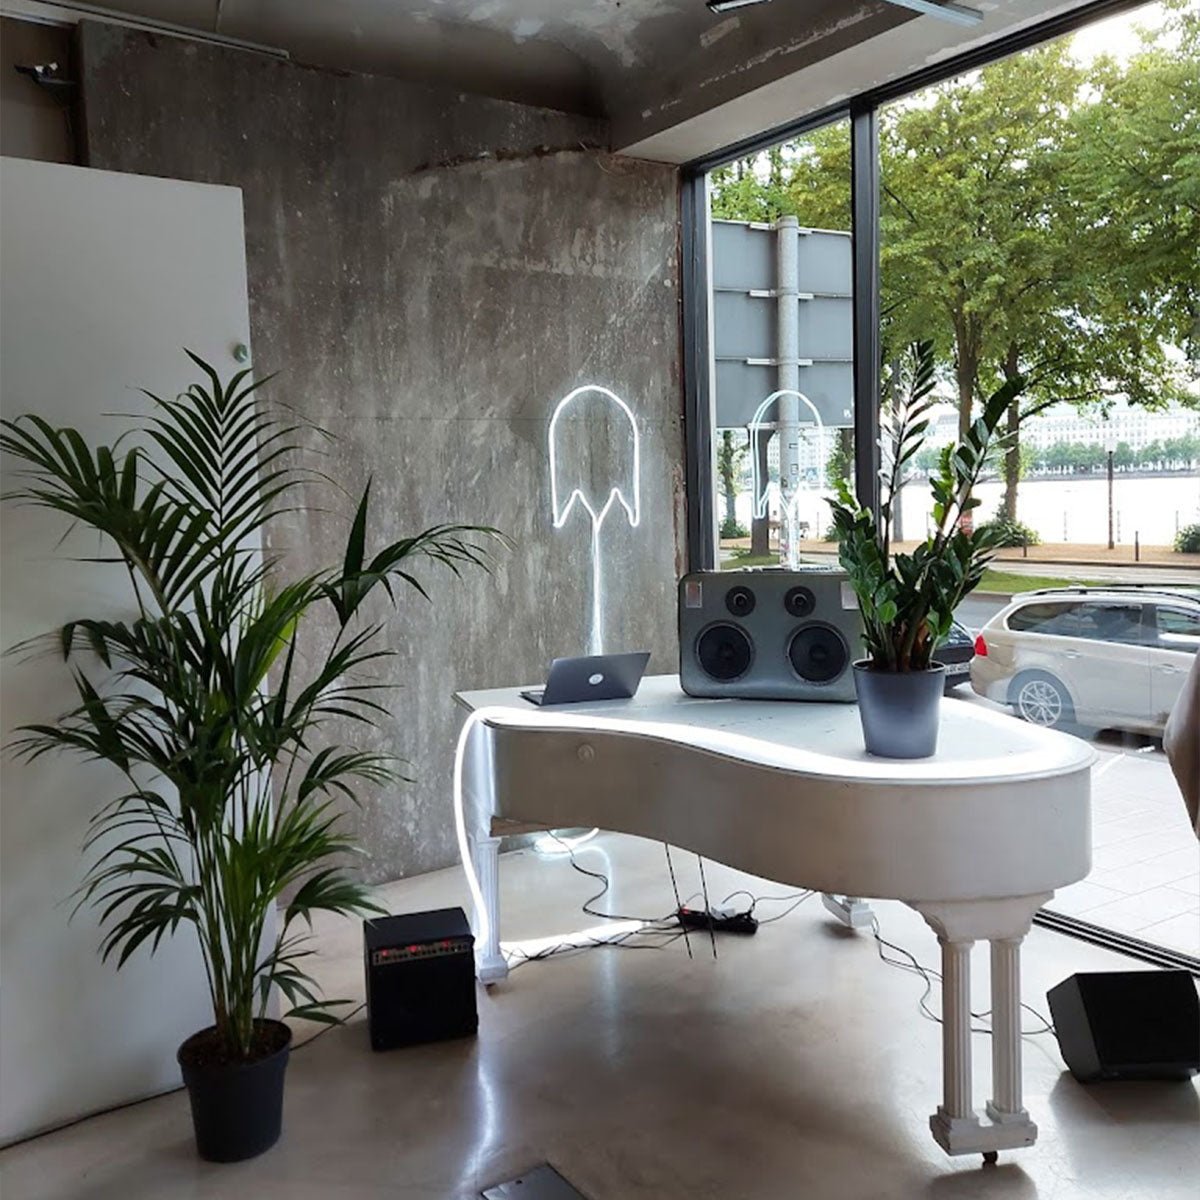 Links steht eine Topfpflanze. Rechts bis mittig steht ein weißes Klavier. Auf dem Klavier steht eine Pflanze und ein Lautsprecher. Im Hintergrund ist eine graue Wand und ein Fenster.